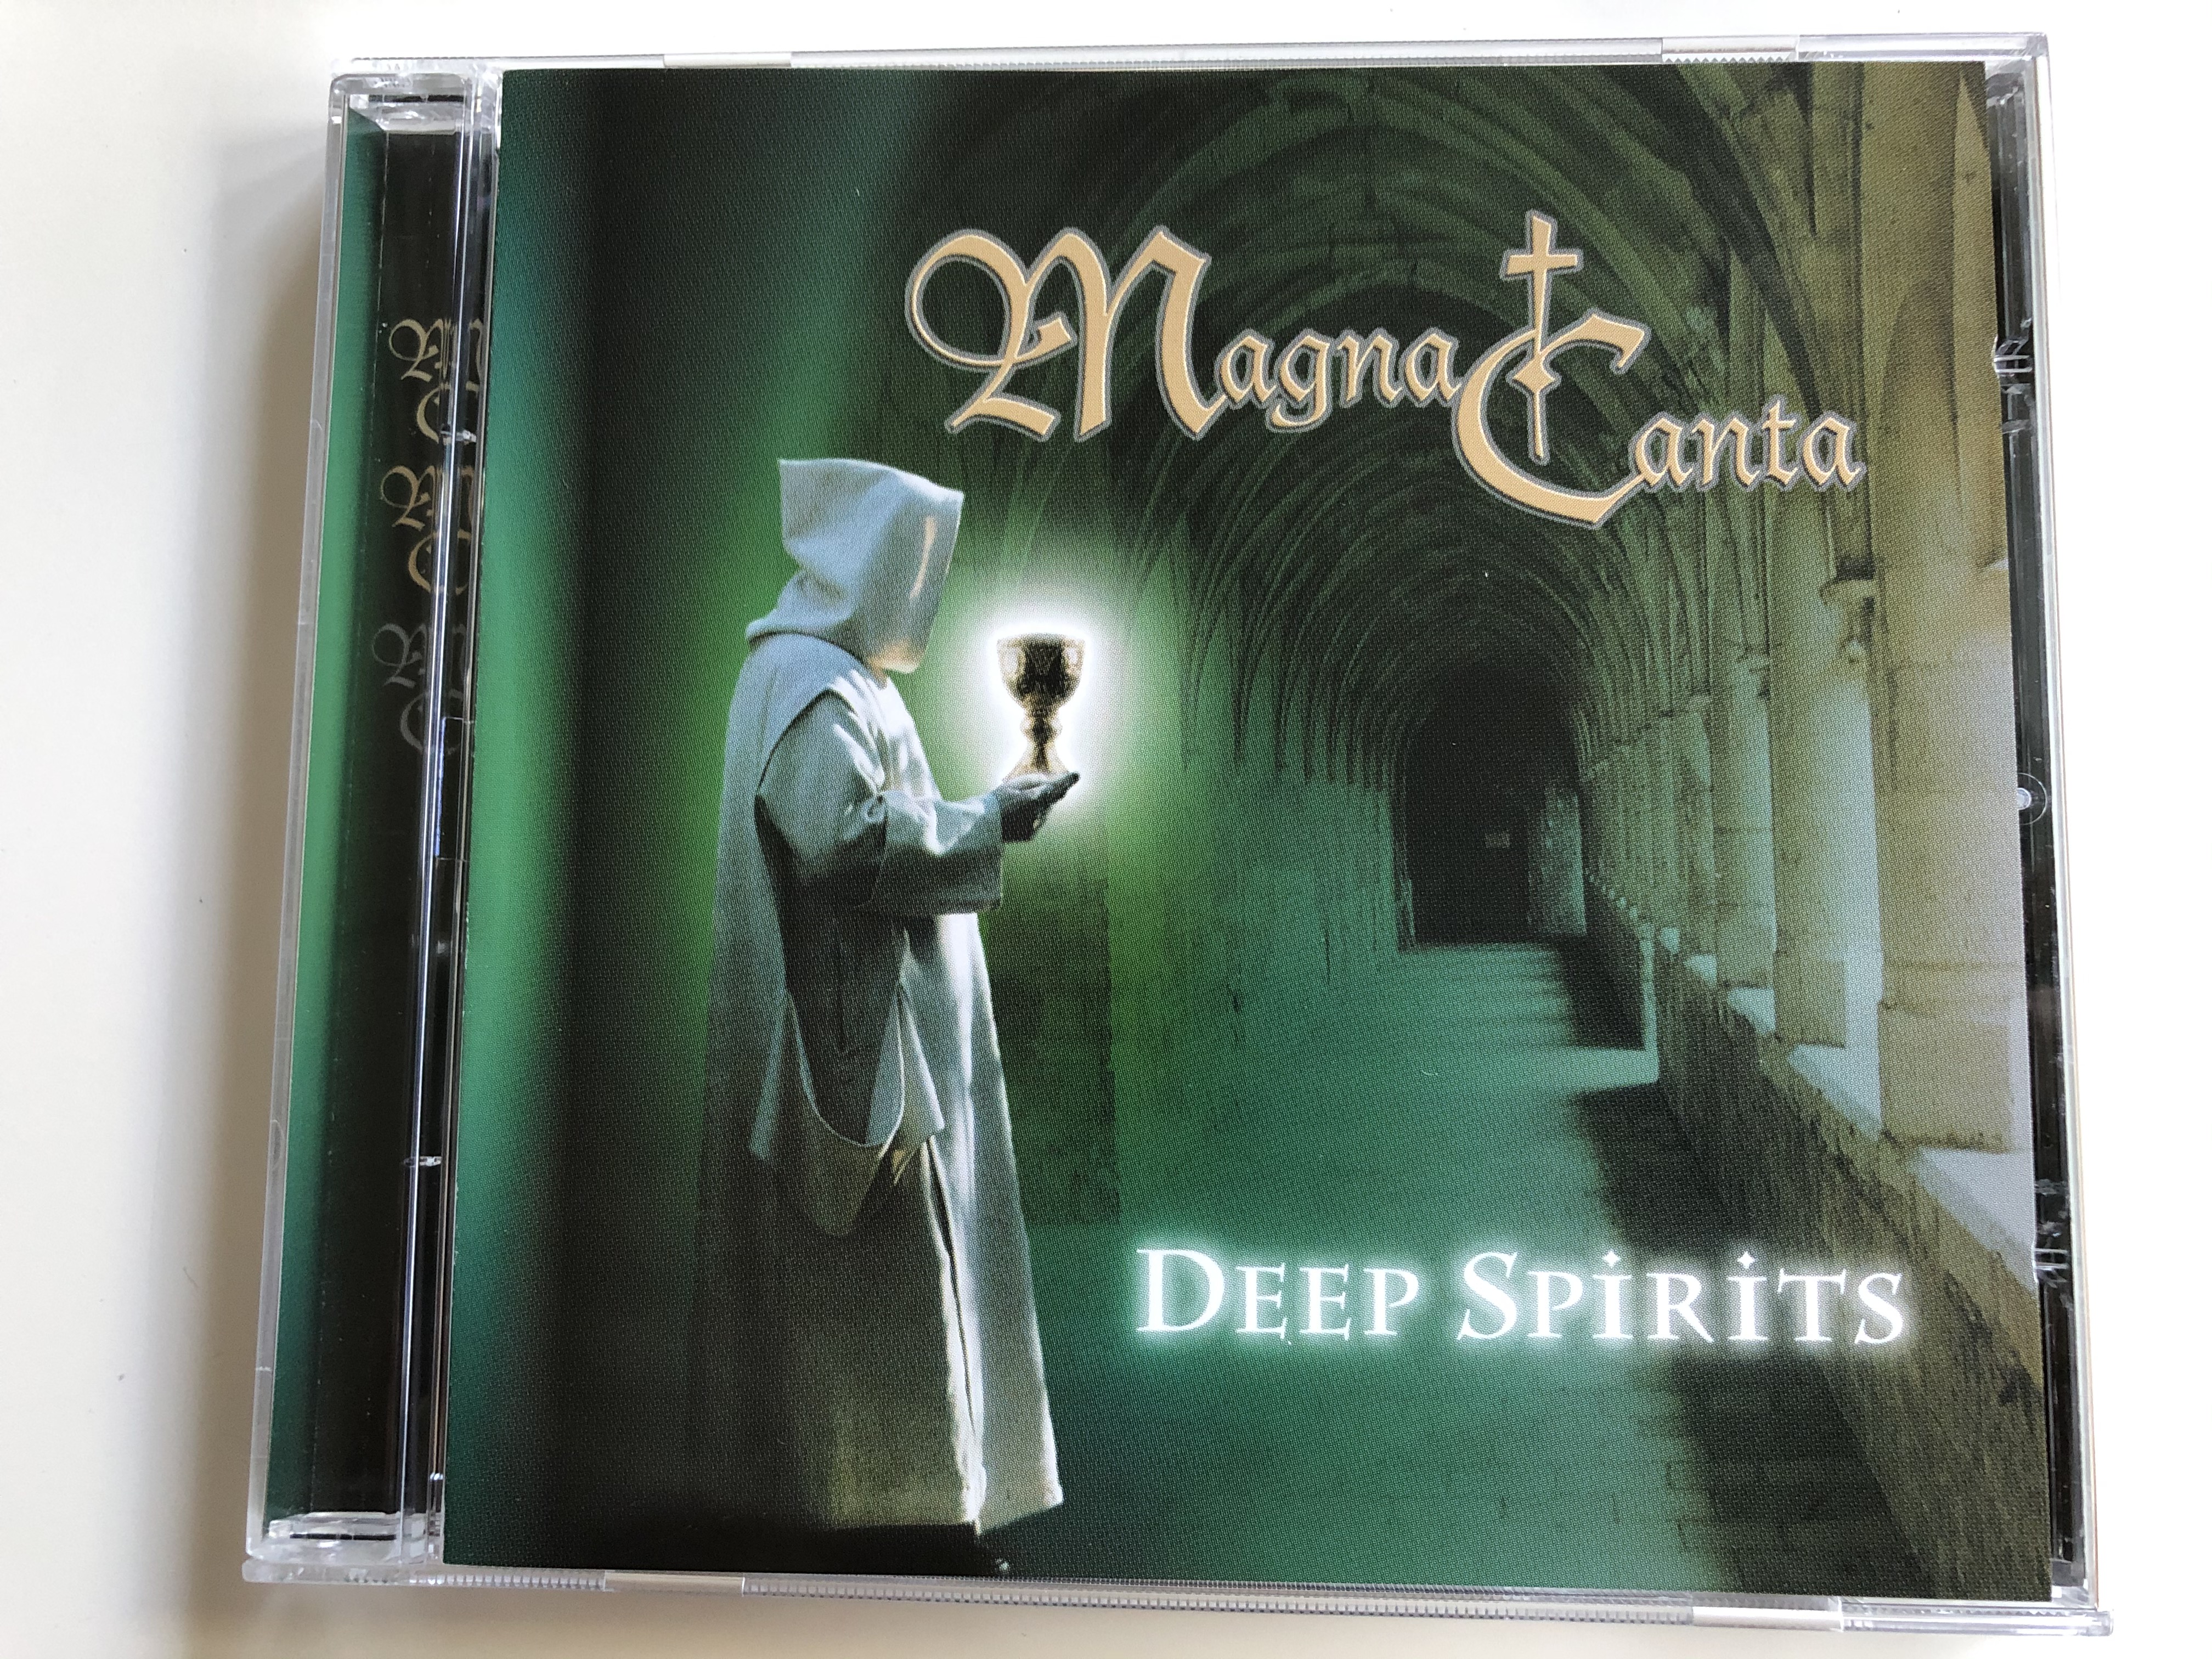 magna-canta-deep-spirits-record-express-audio-cd-2000-943-1-.jpg